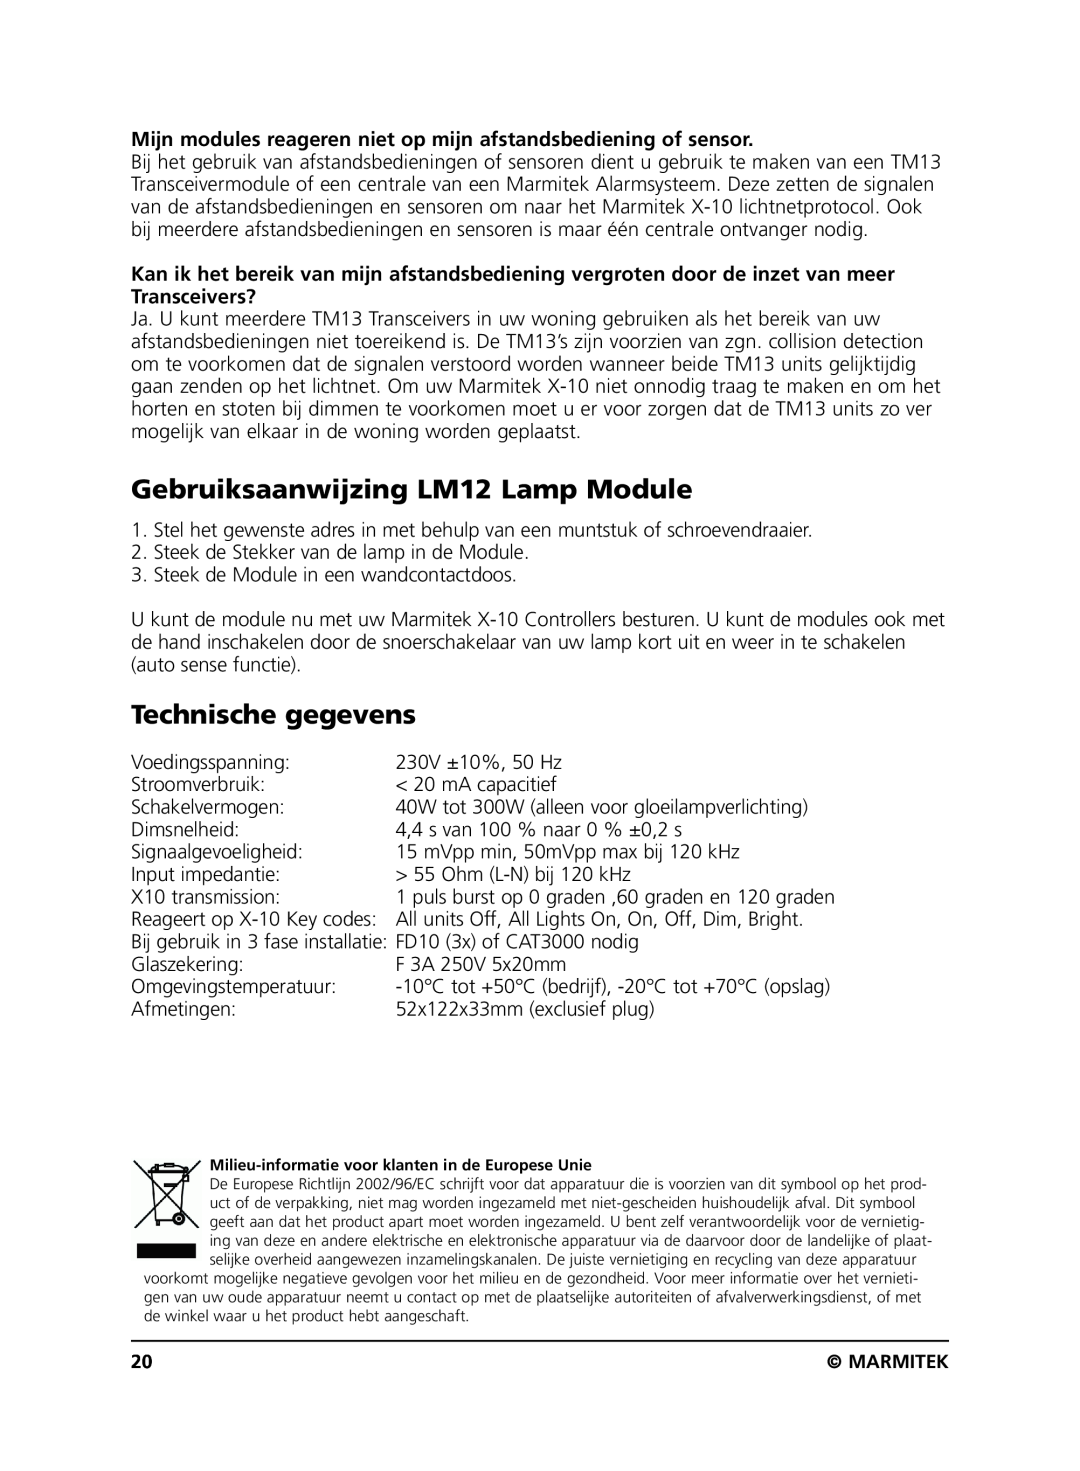 Marmitek user manual Gebruiksaanwijzing LM12 Lamp Module, Technische gegevens 